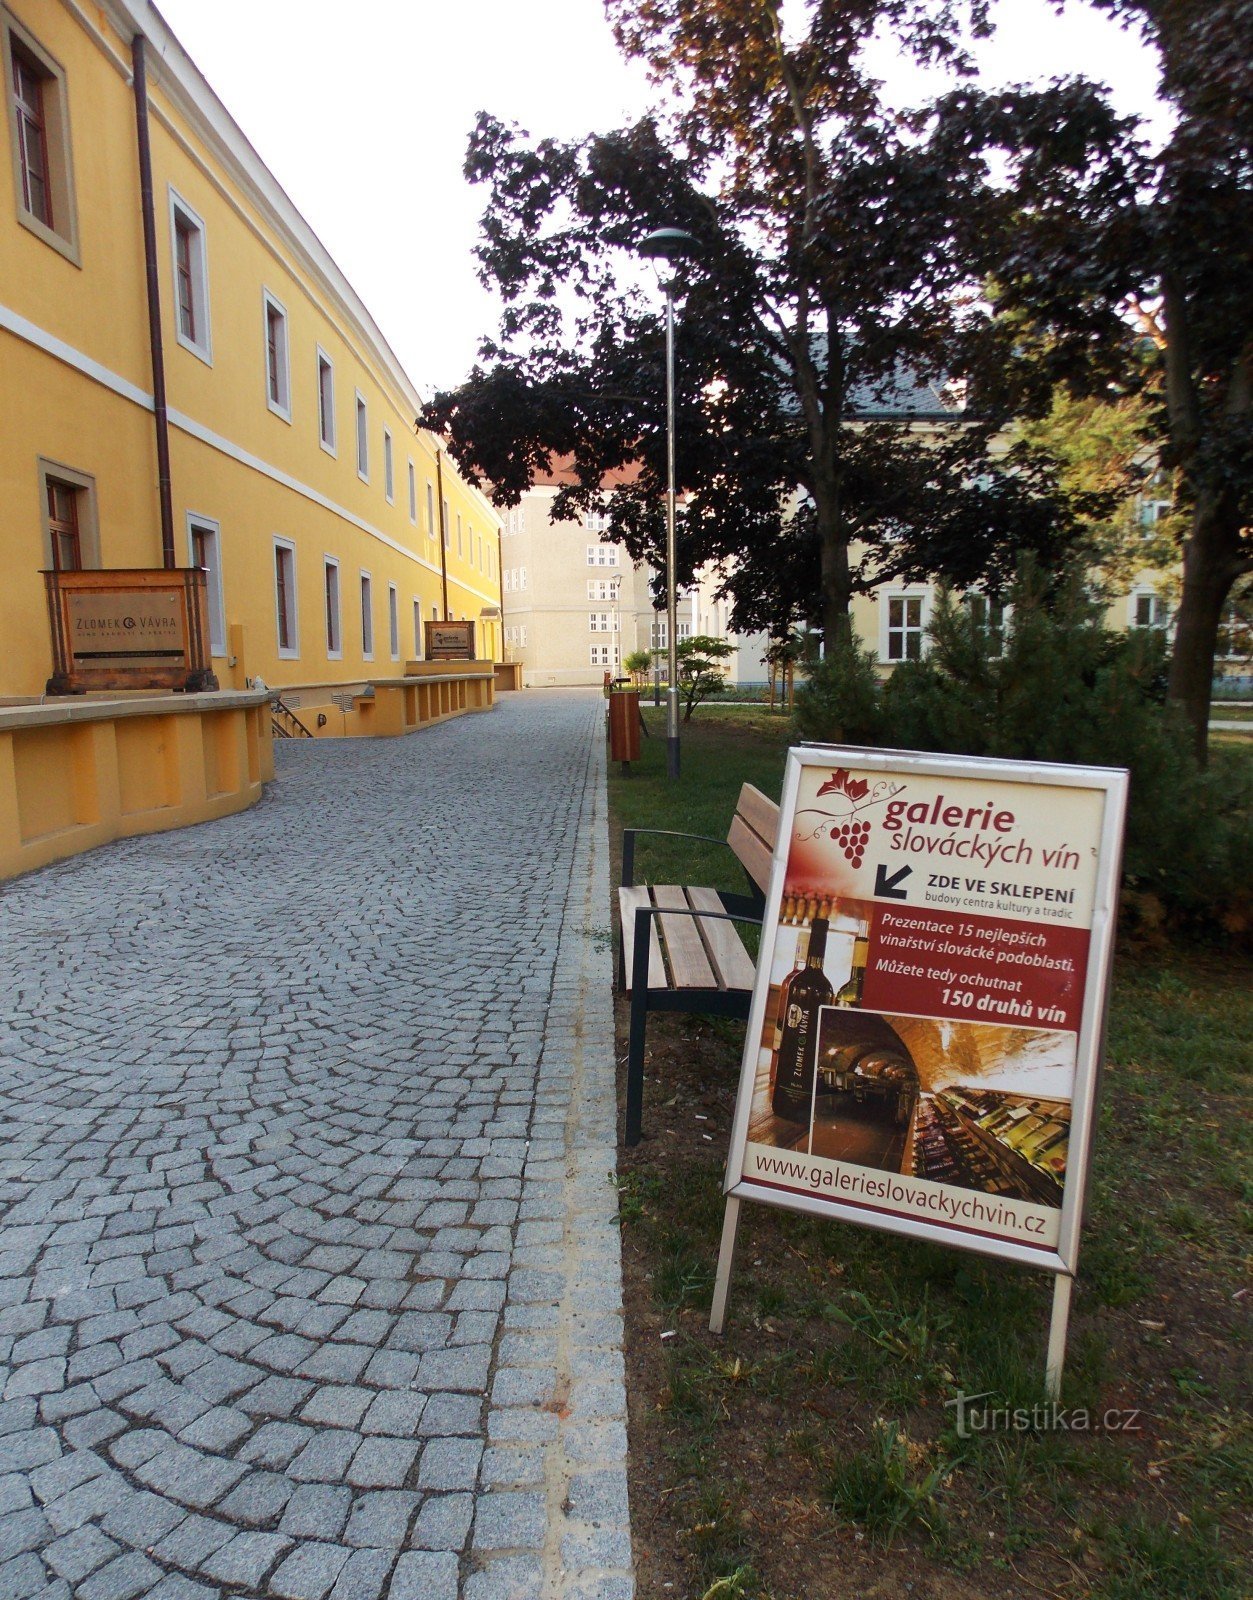 Galeria de vinuri slovace în Uh. Hradišti